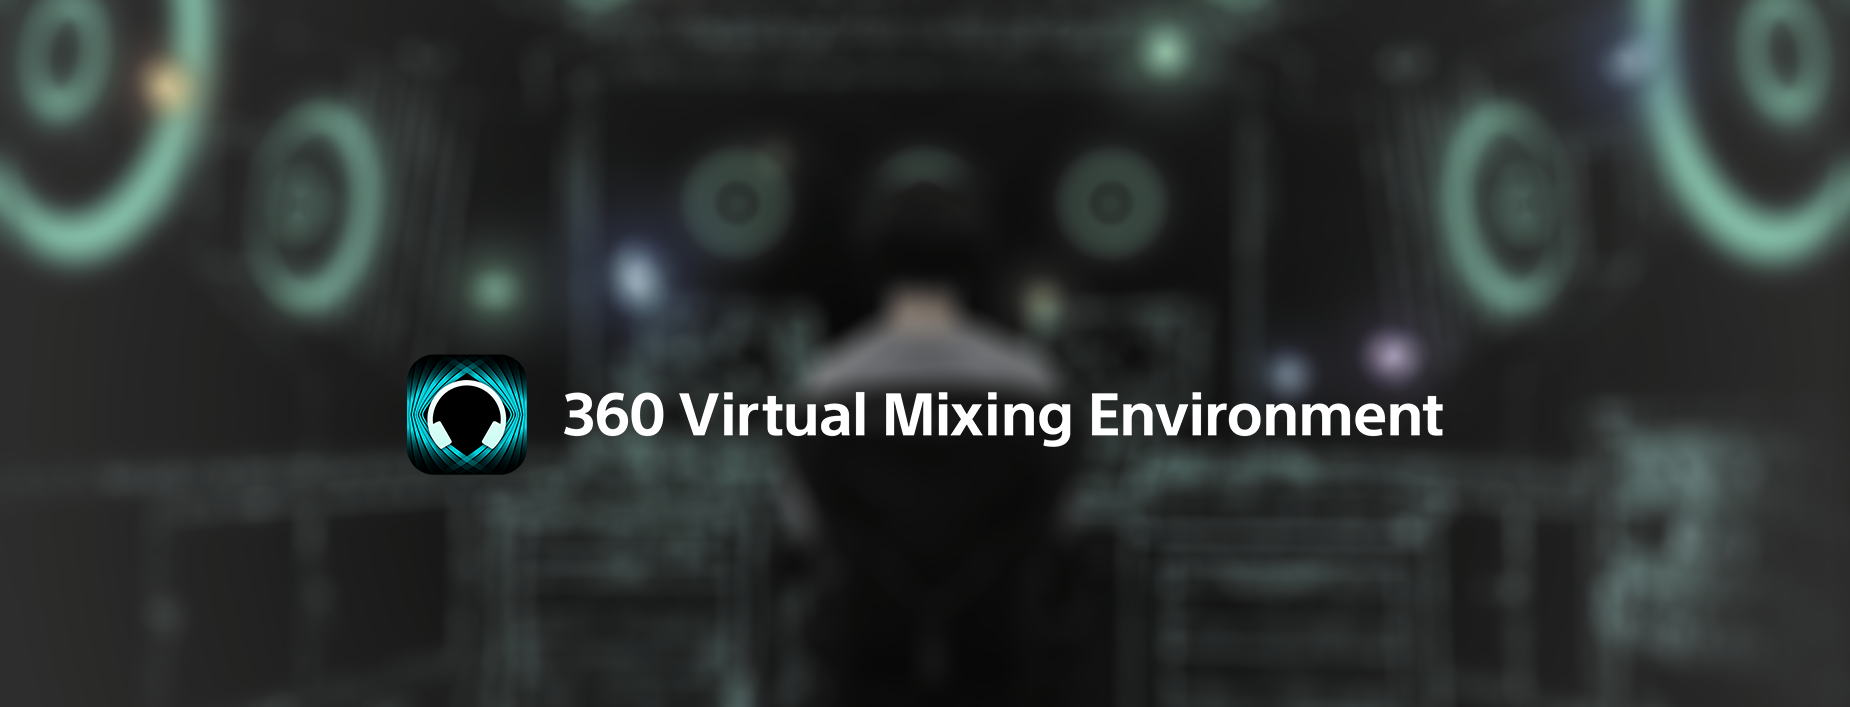 360Virtual mixing environment